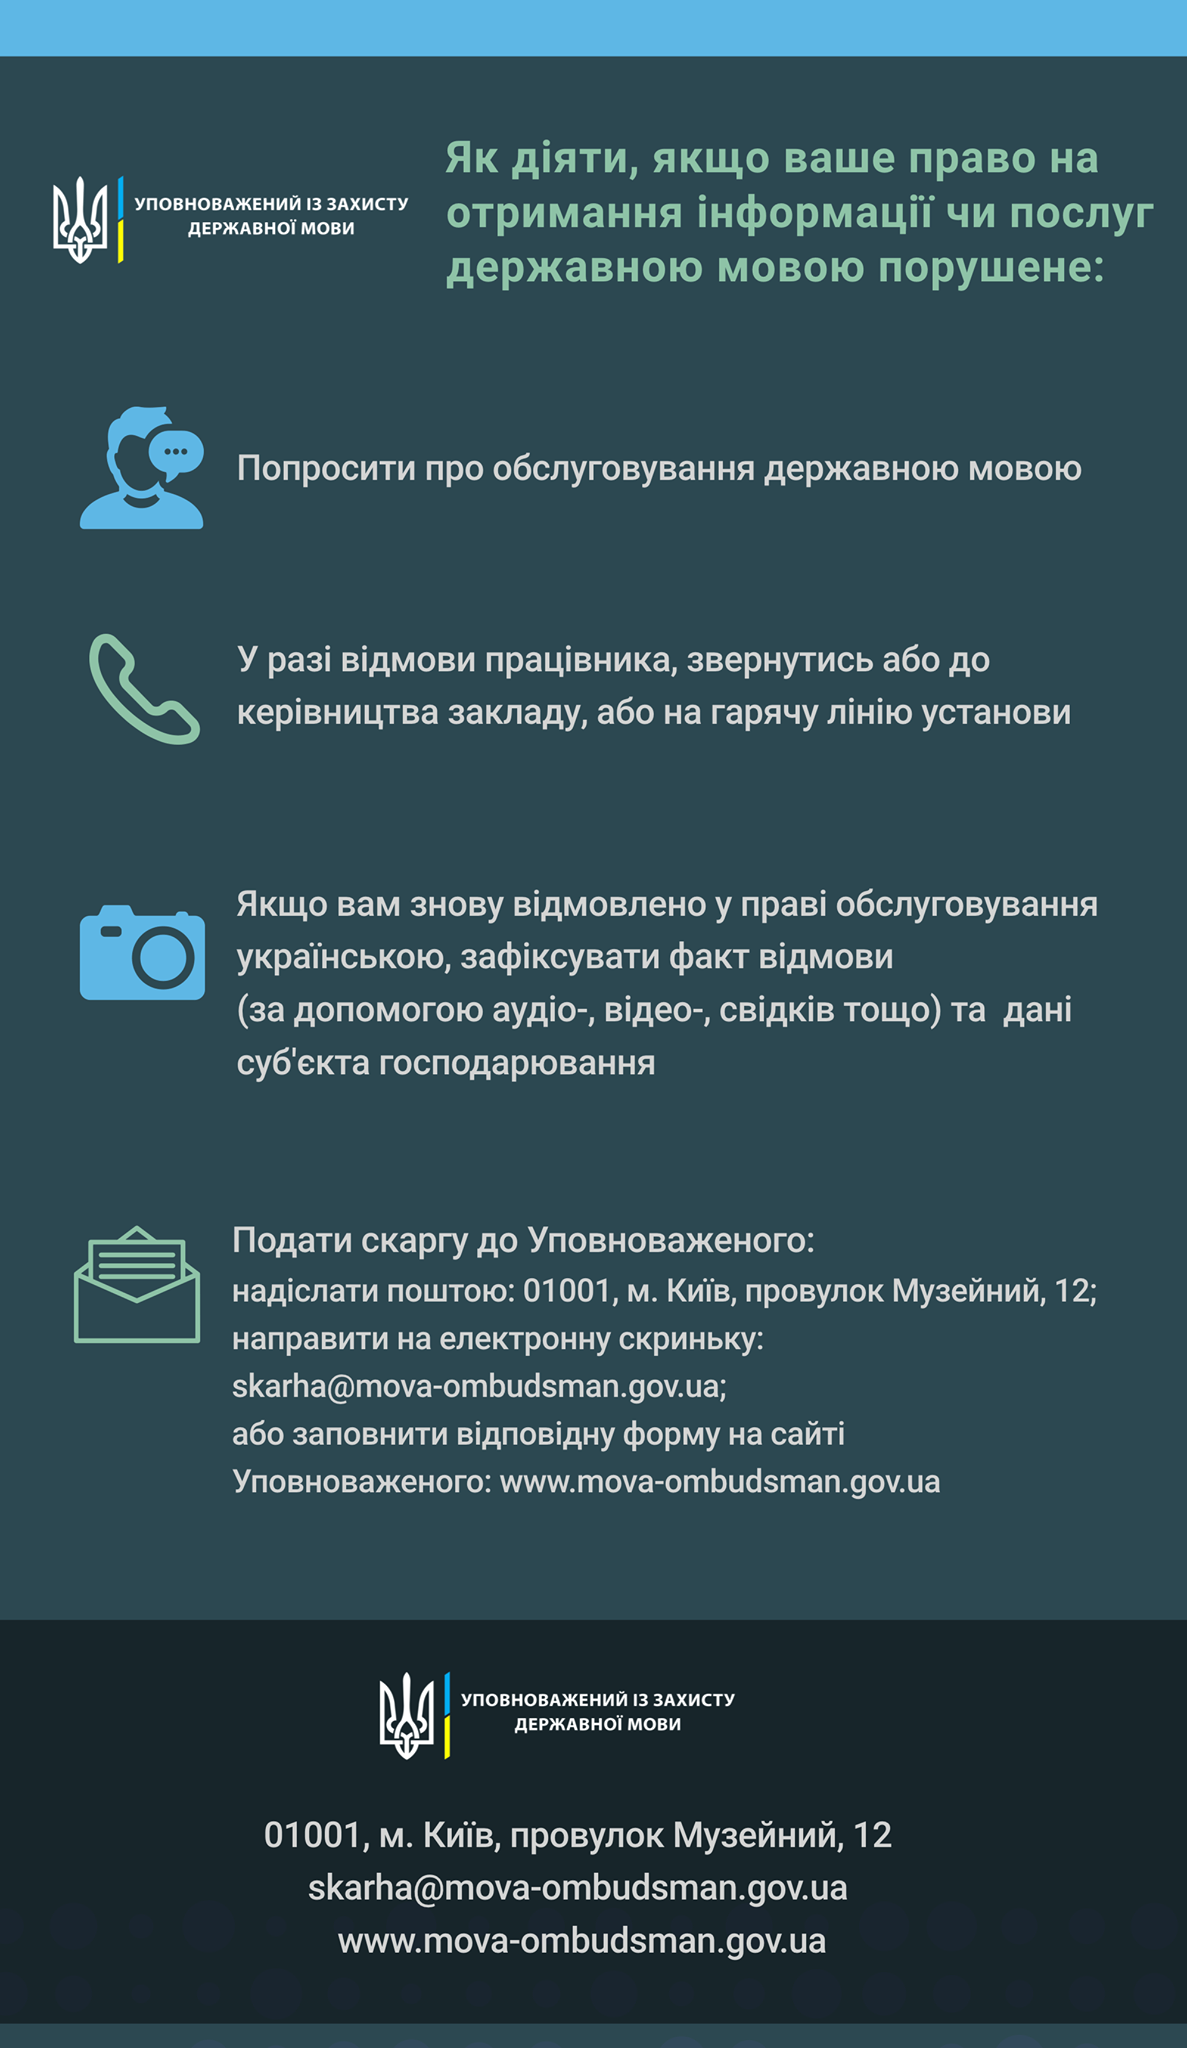 как действовать в случае отказа в обслуживании на украинском языке